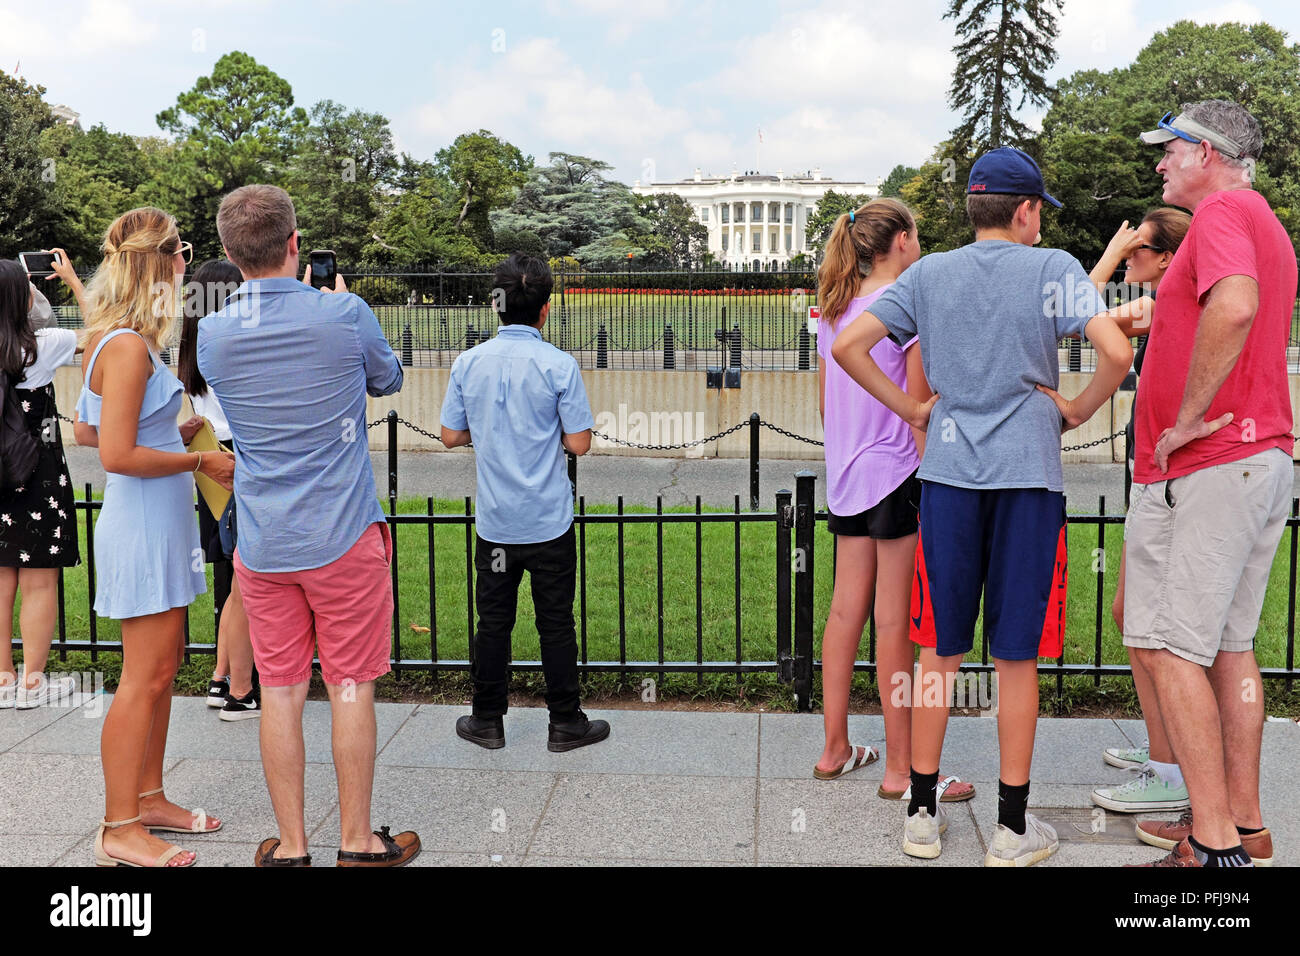 Les touristes d'été se lever et prendre des photos de la Maison Blanche américaine lointain de derrière les barrières de sécurité dans la région de Washington, D.C. Etats-unis. Banque D'Images